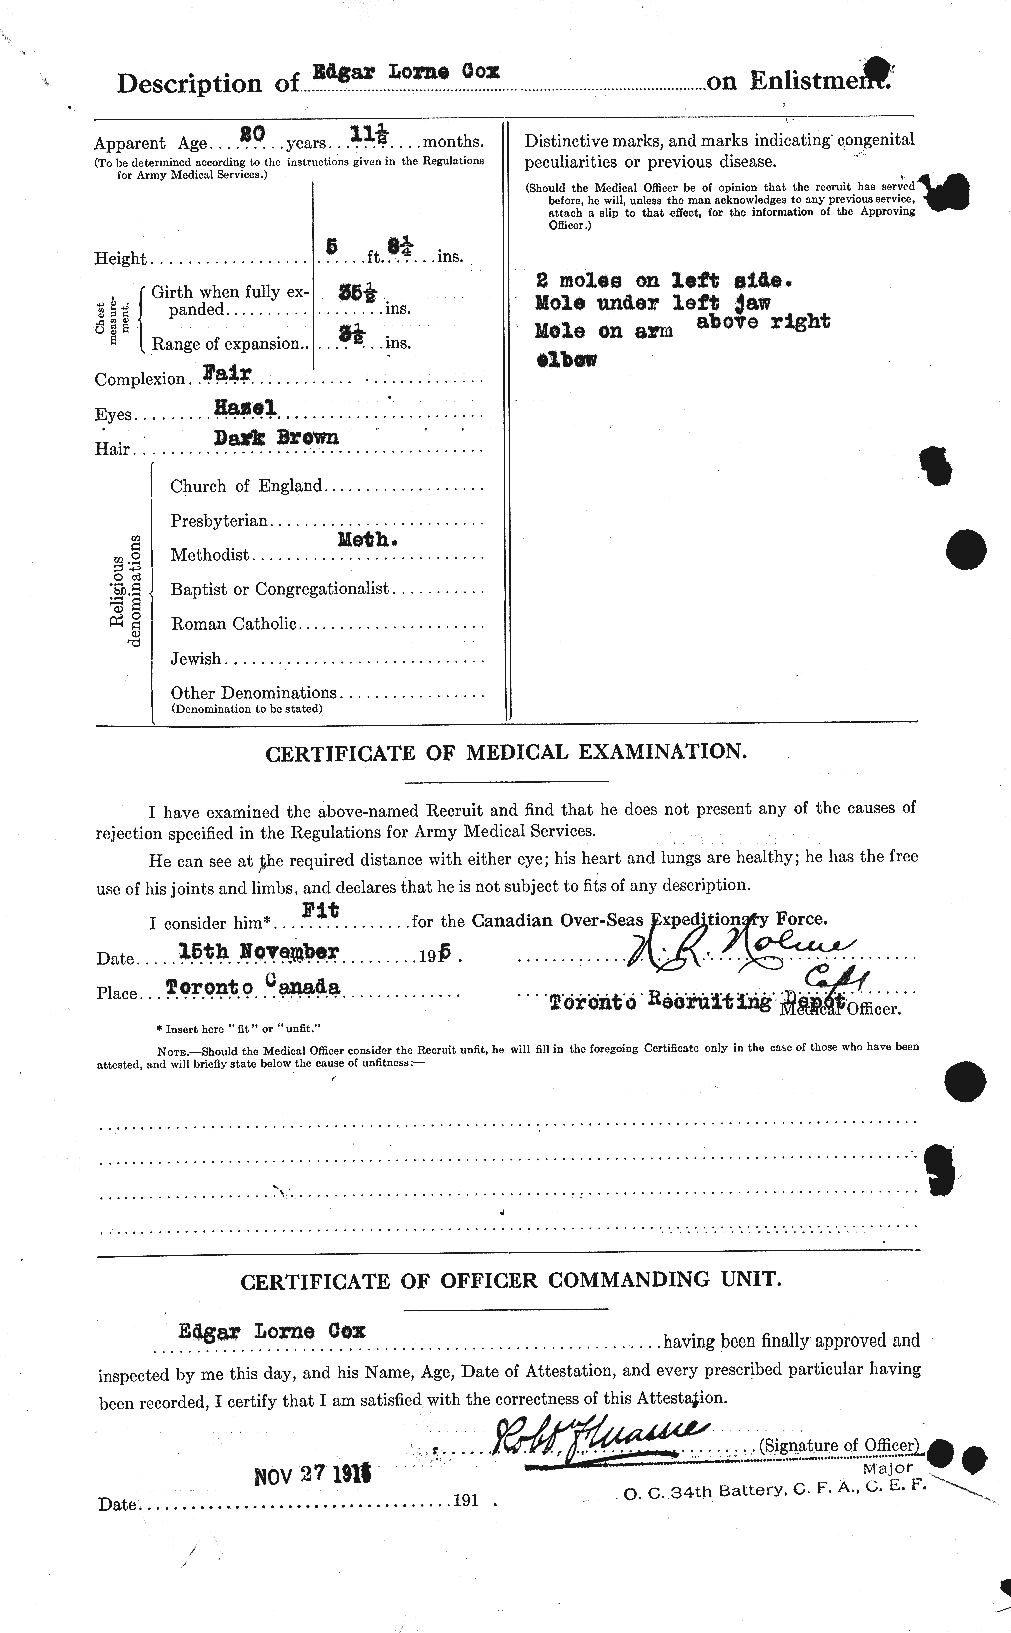 Dossiers du Personnel de la Première Guerre mondiale - CEC 068768b